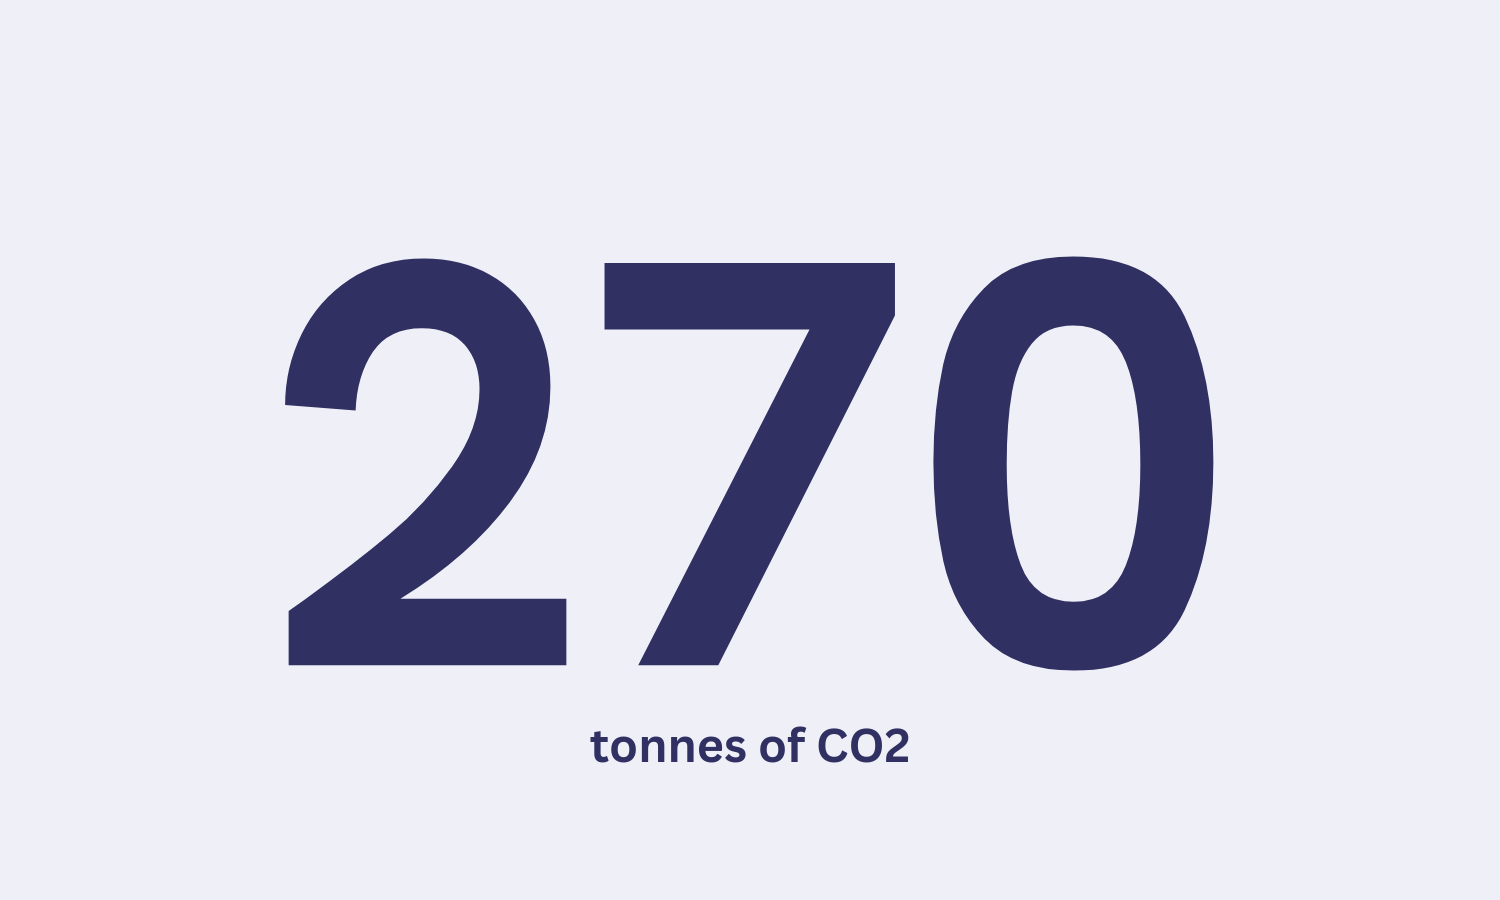 270 tonnes of co2